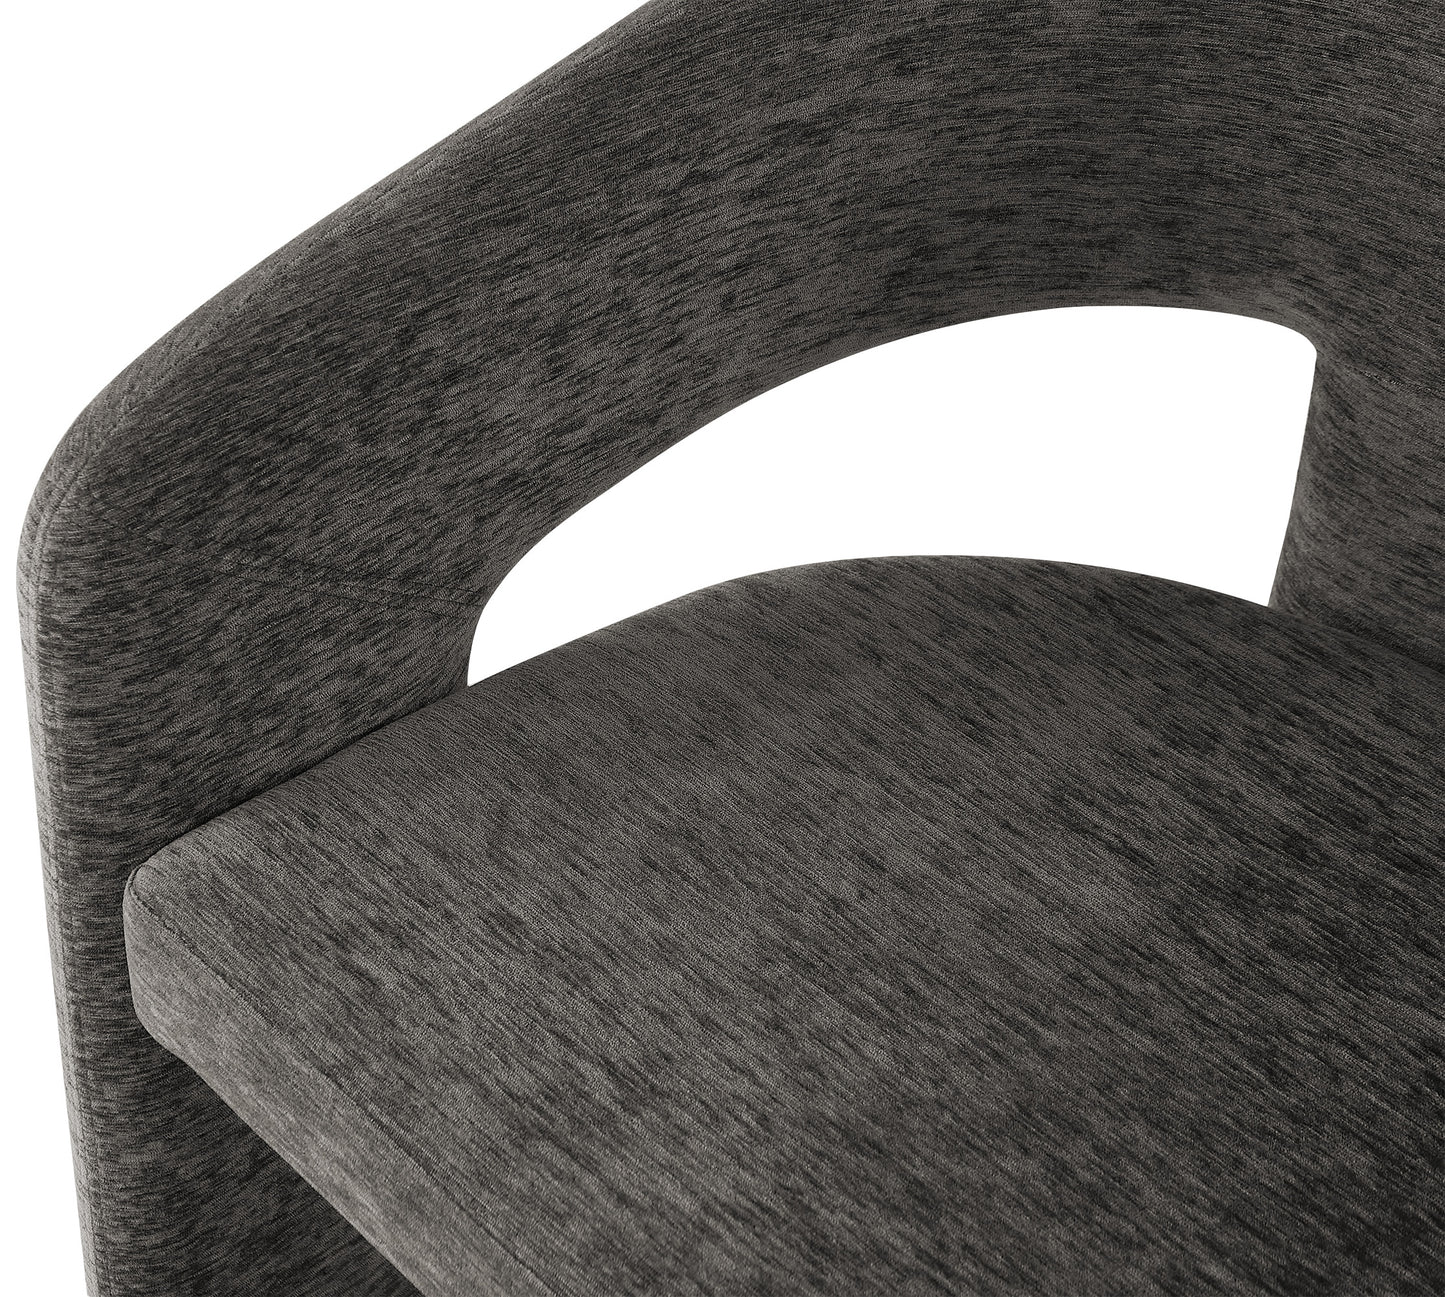 burl grey plush fabric dining chair c